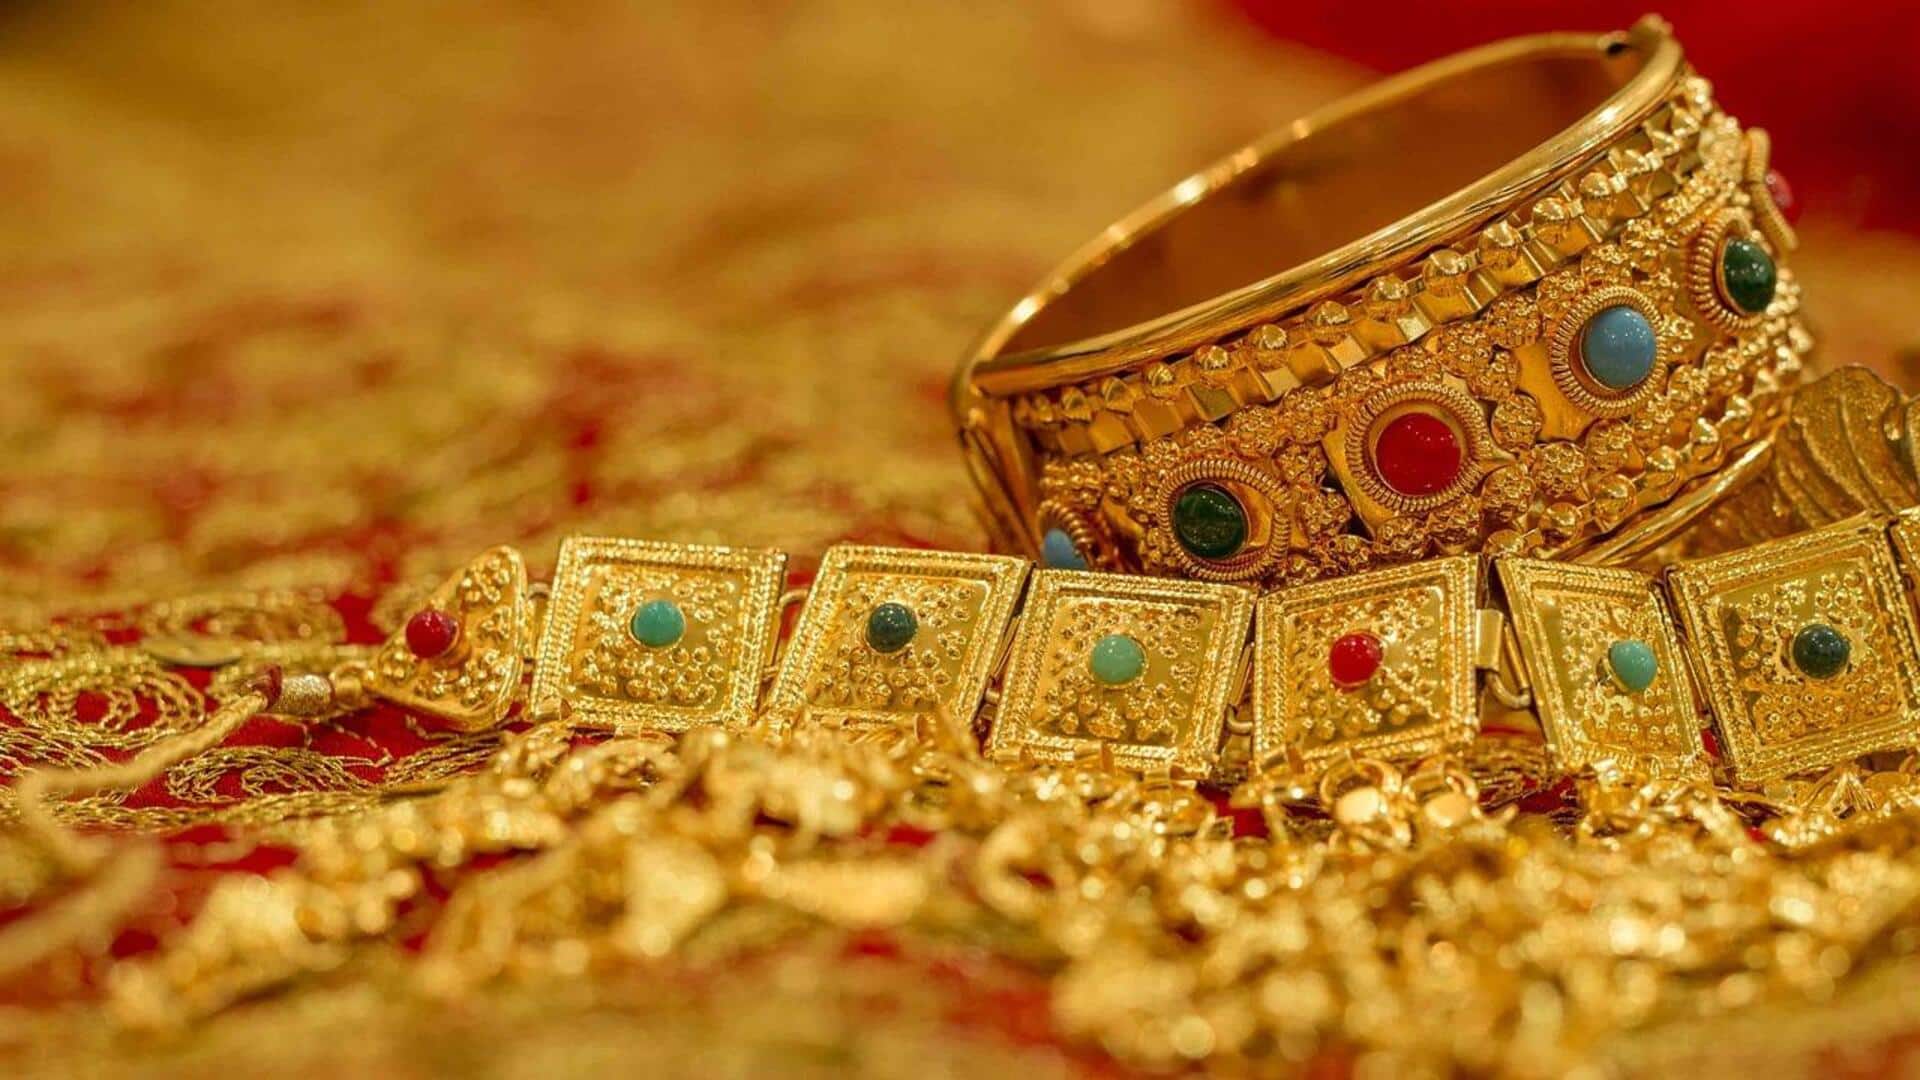 राजस्थान: जयपुर में अमेरिकी महिला पर्यटक को 300 रुपये का आभूषण 6 करोड़ रुपये में बेचा